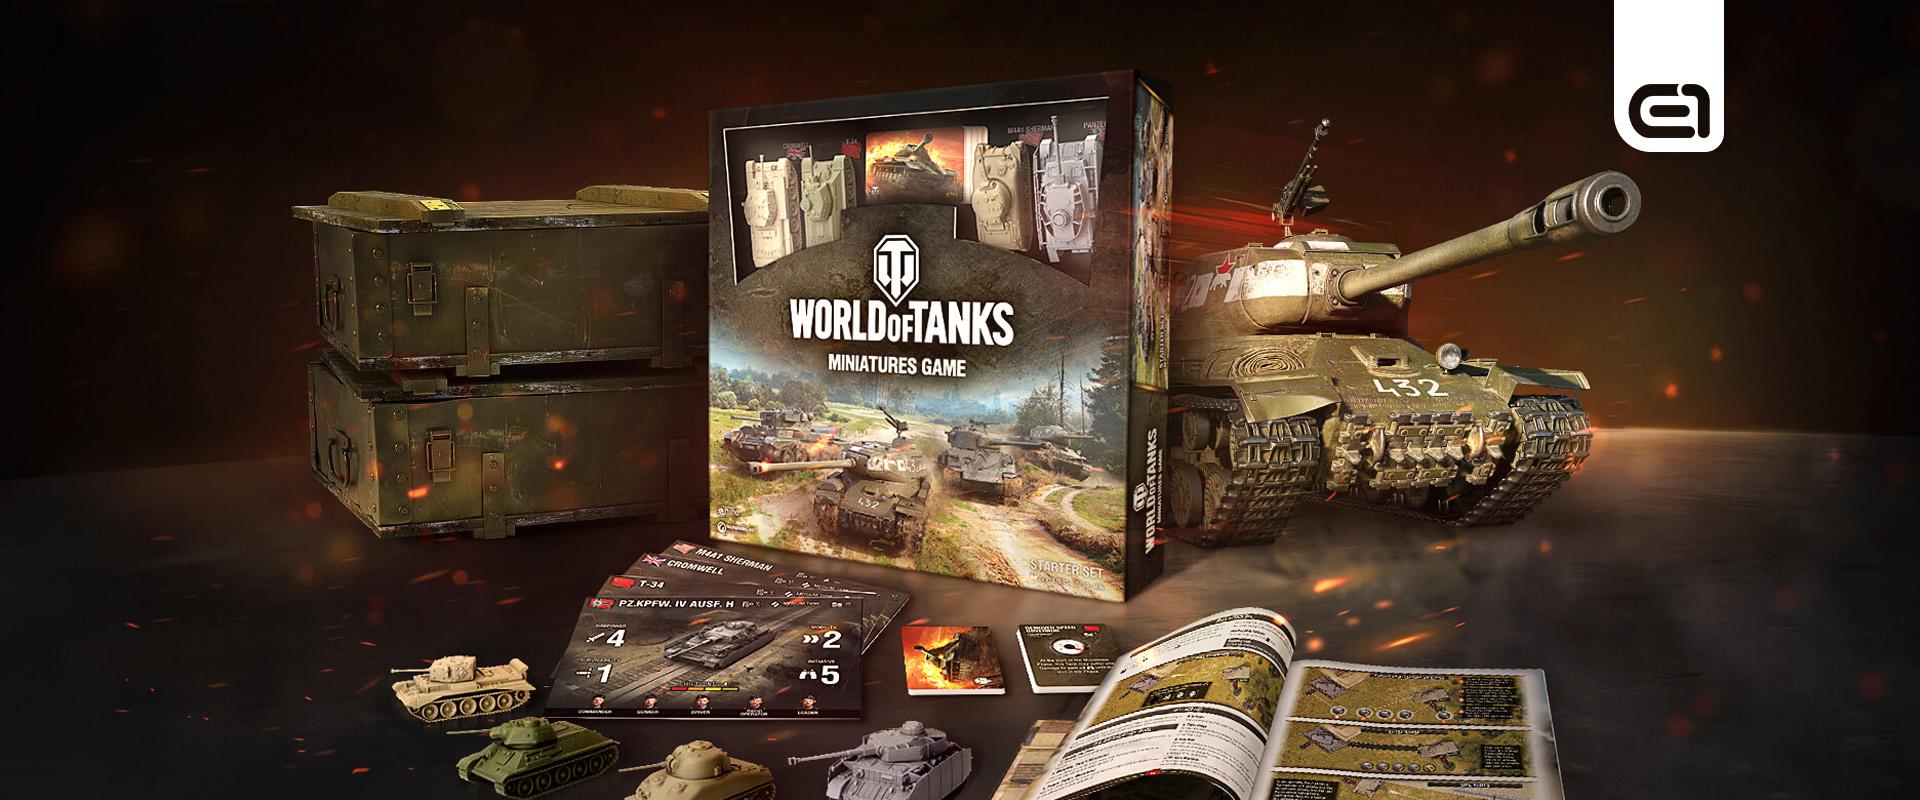 World of Tanks Miniatures Game: Új kiegészítők érkeztek